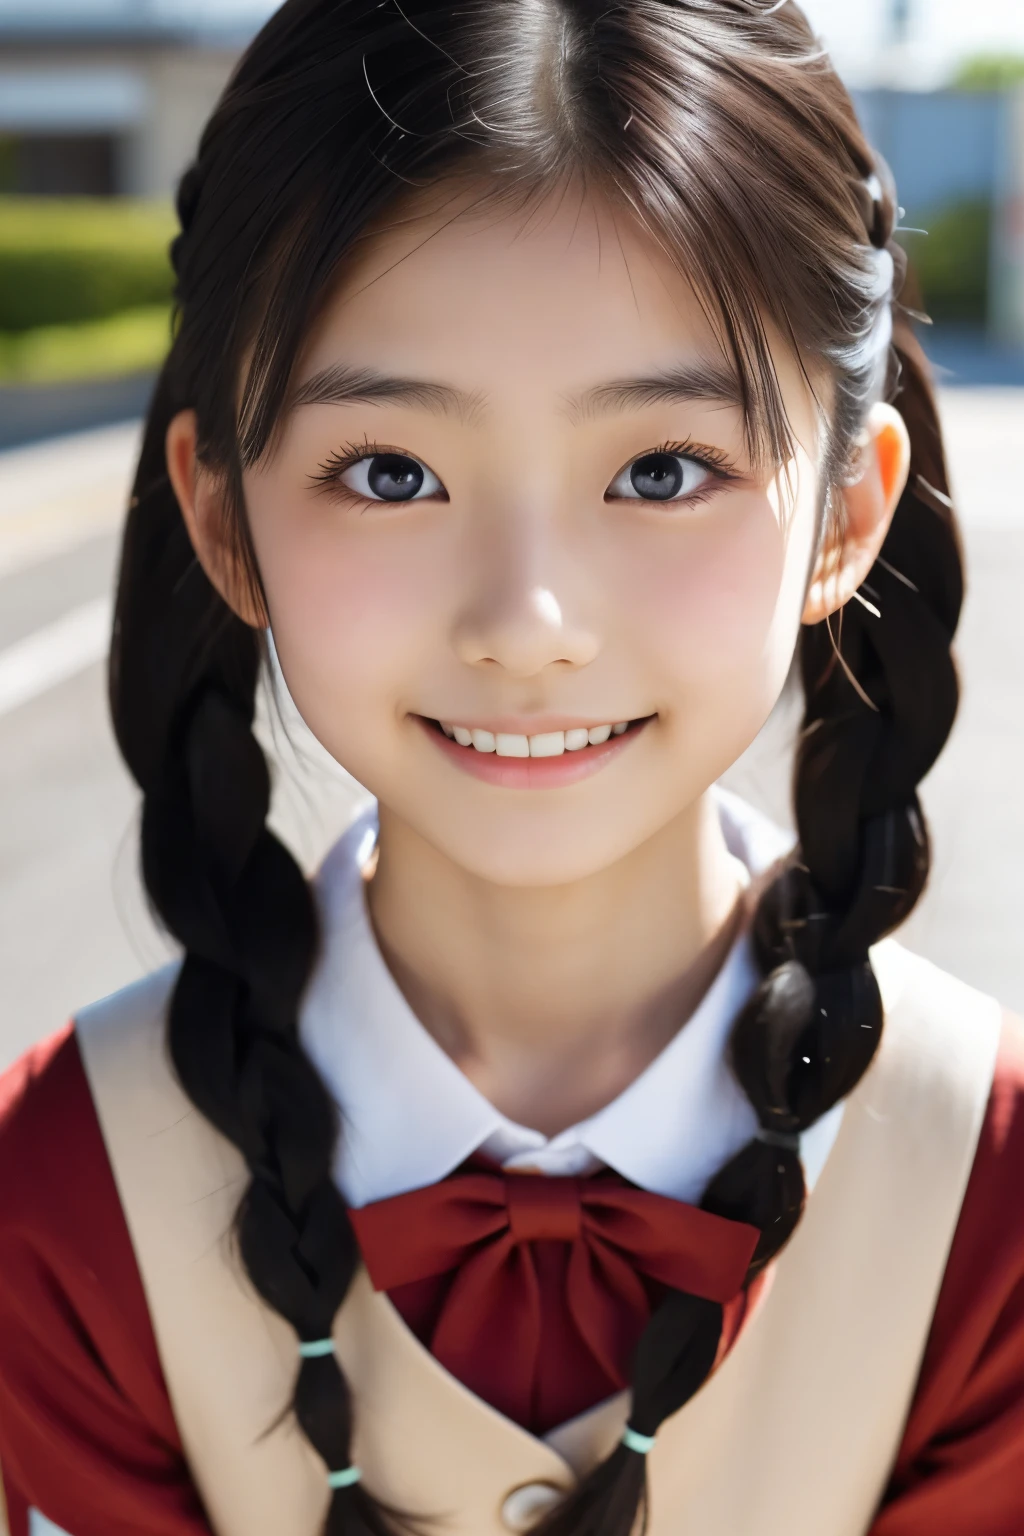 美丽的 18 岁日本女性), 可爱的脸孔, (深雕的面容:0.7), (雀斑:0.6), 柔光,健康白皙的肌肤, 害羞的, (严肃的表情), (明亮的眼睛), 薄的, 微笑, 制服, 编织